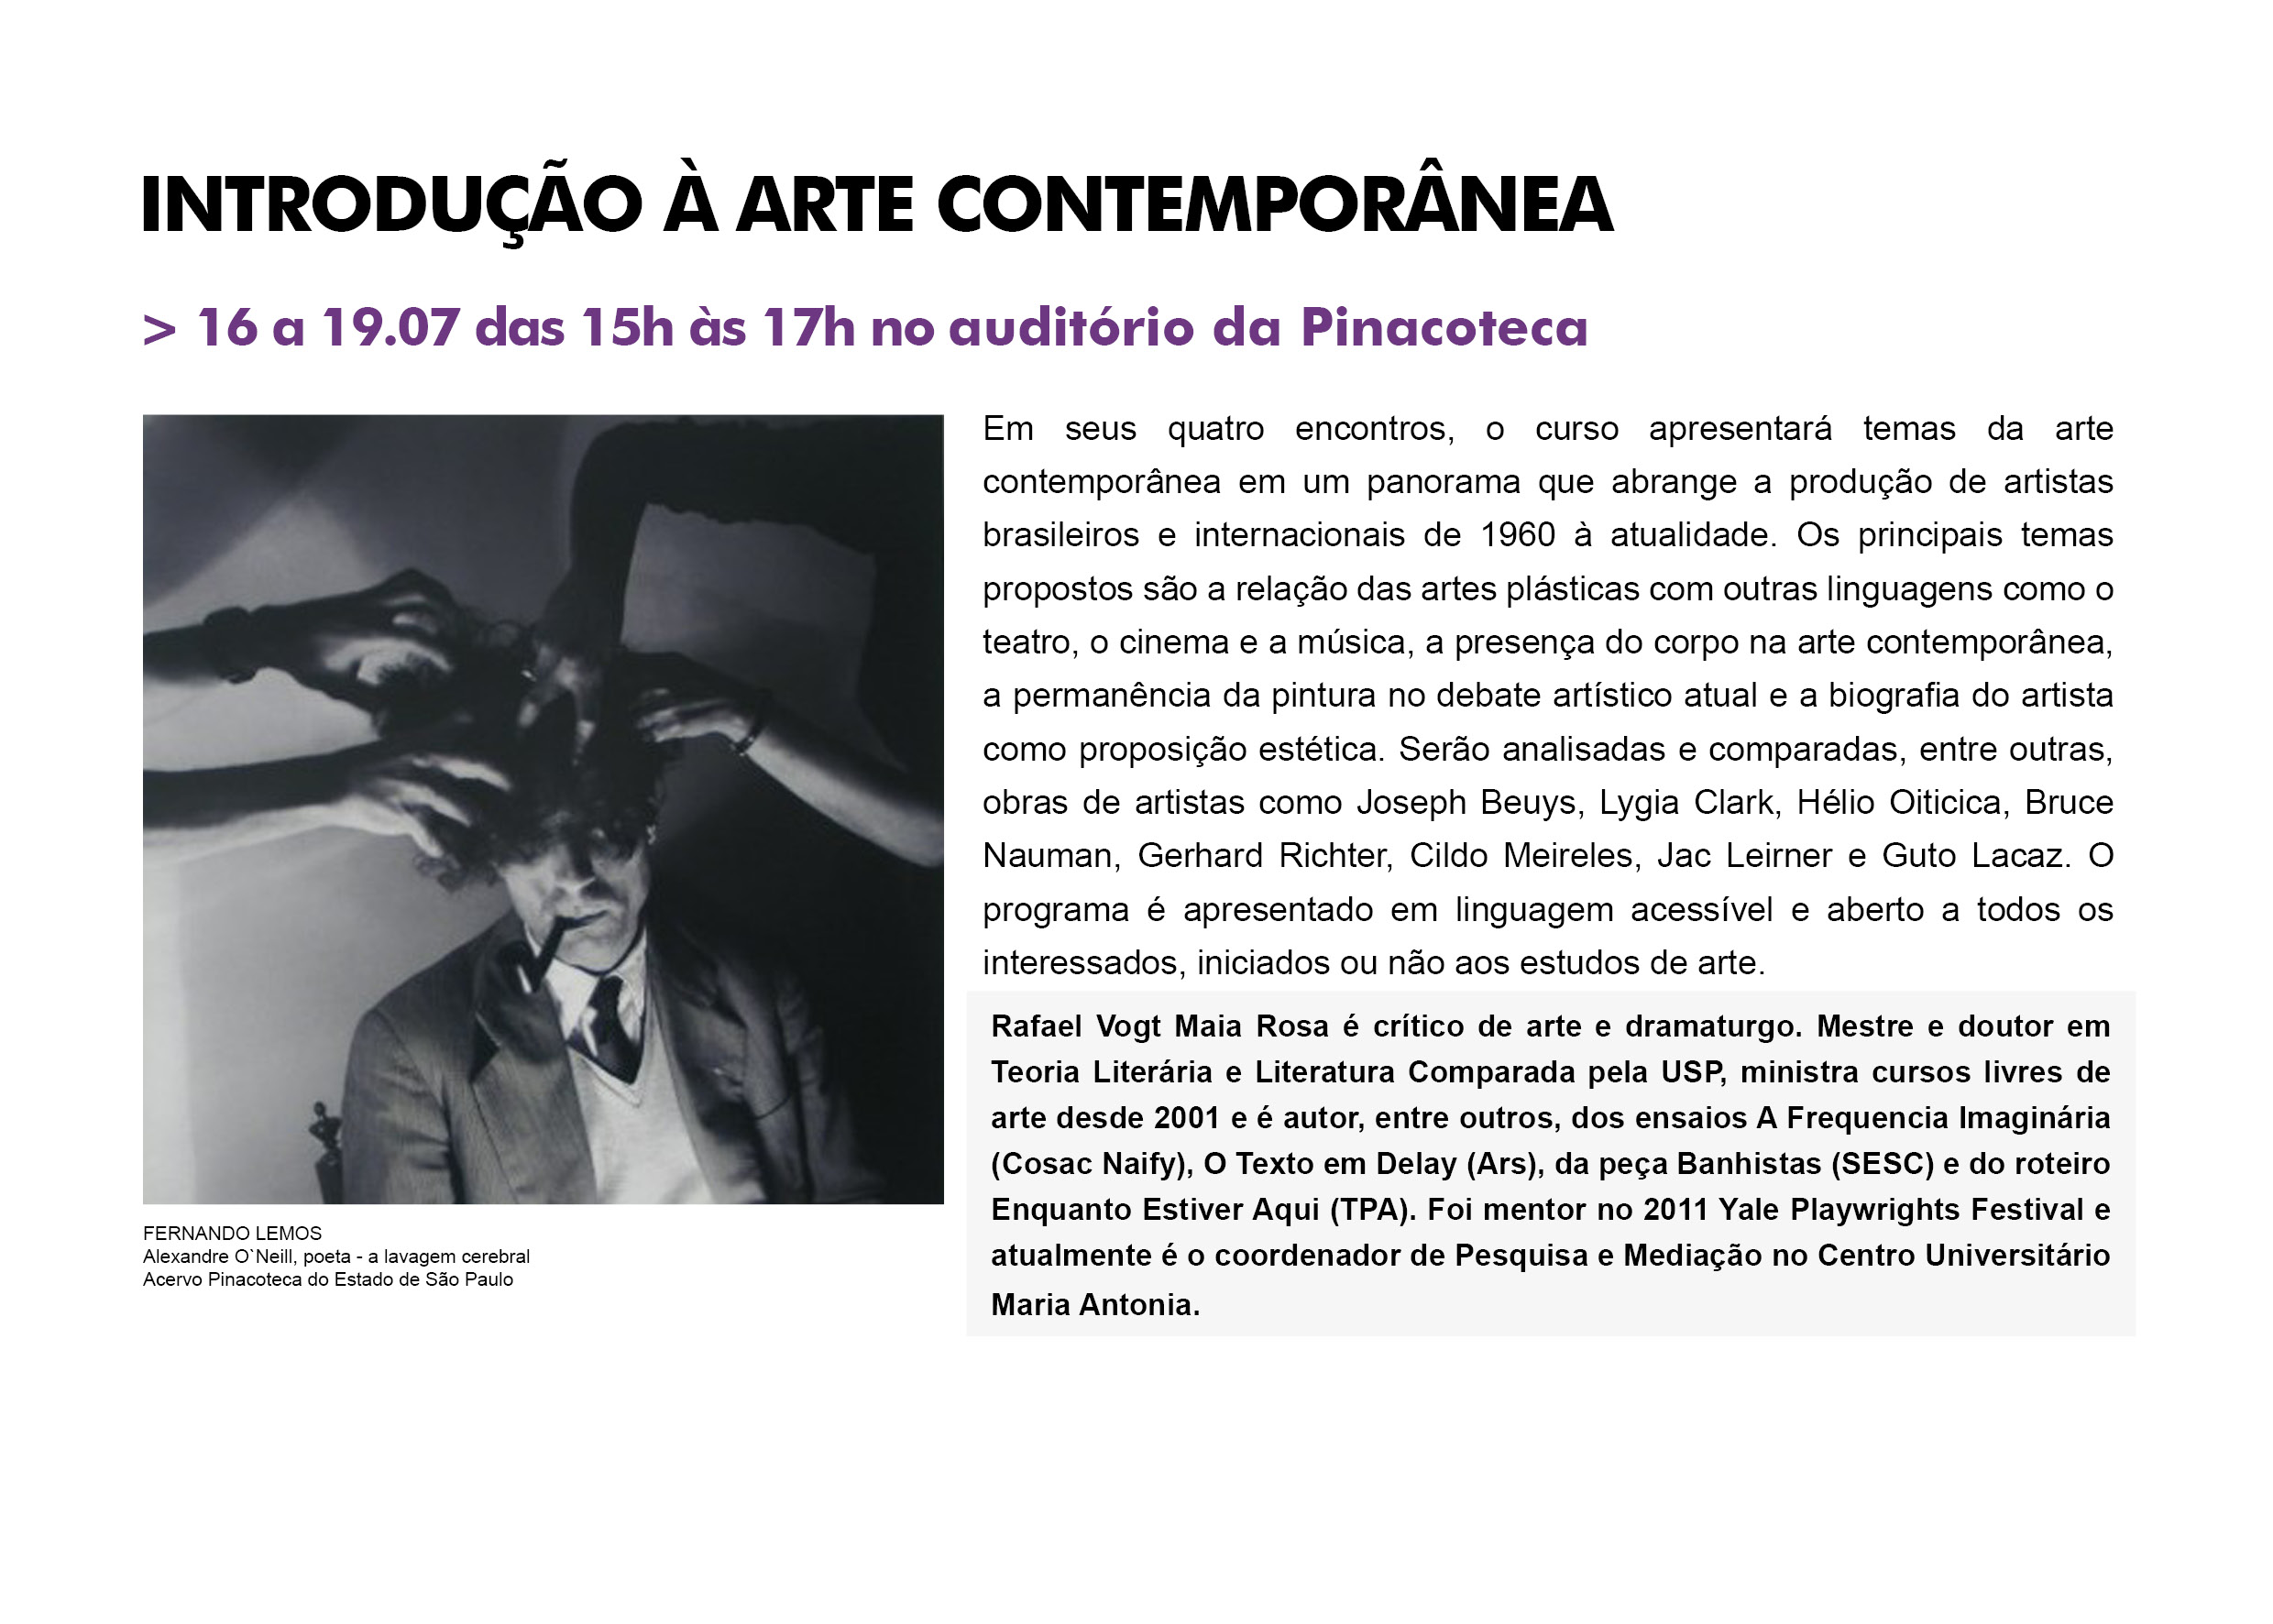 Curso Pinacoteca: História da Arte - Introdução à Arte Contemporânea